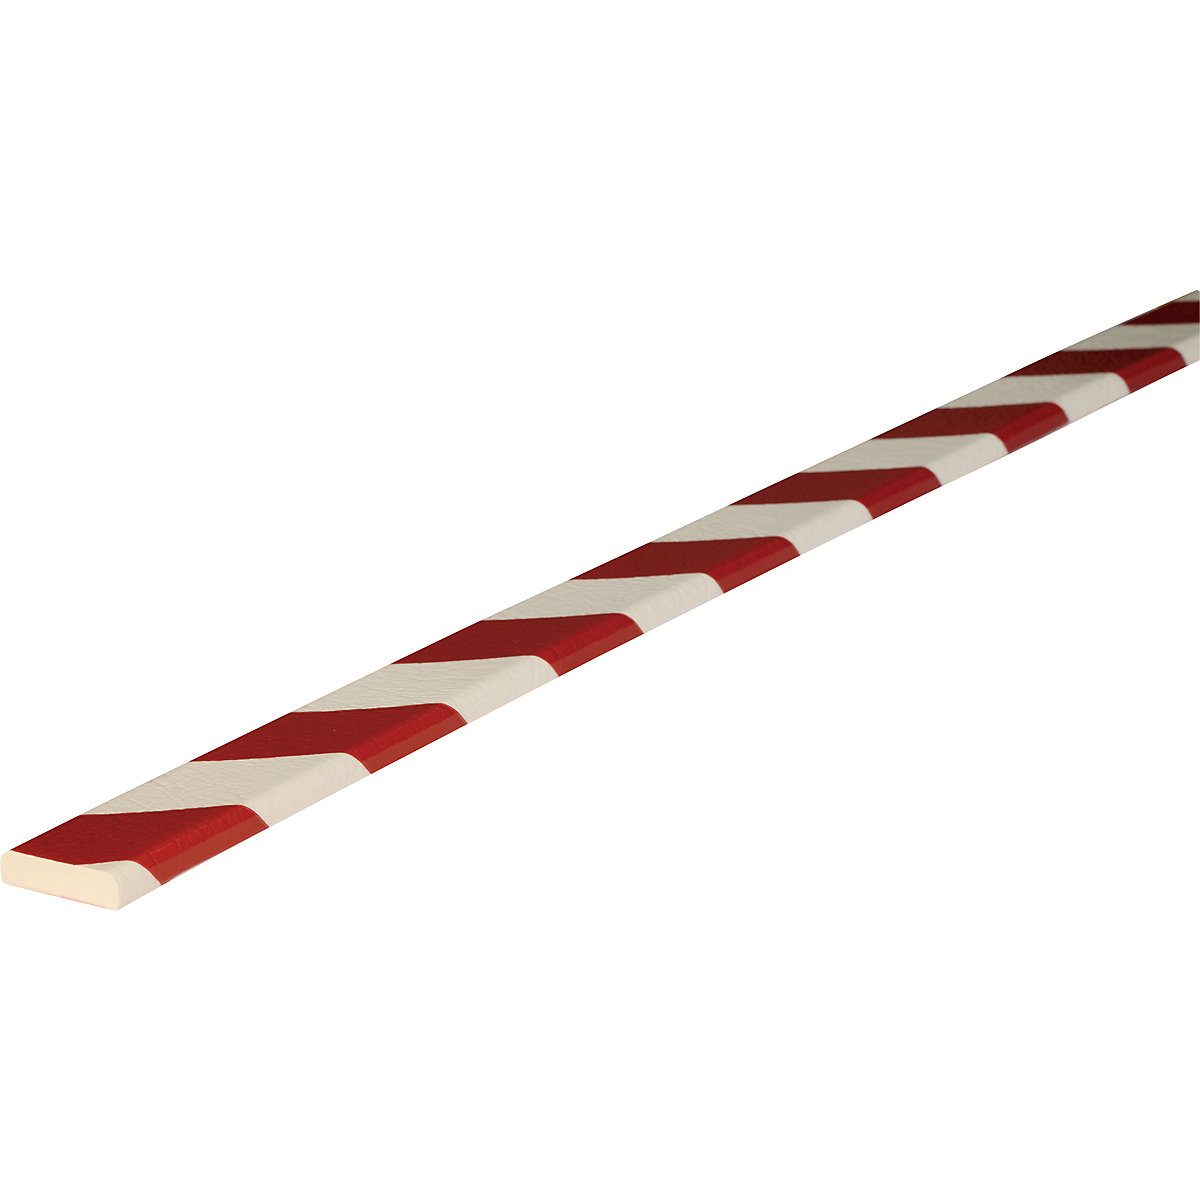 Knuffi® felületvédő – SHG, F típus, 1 m-es darab, piros / fehér-23